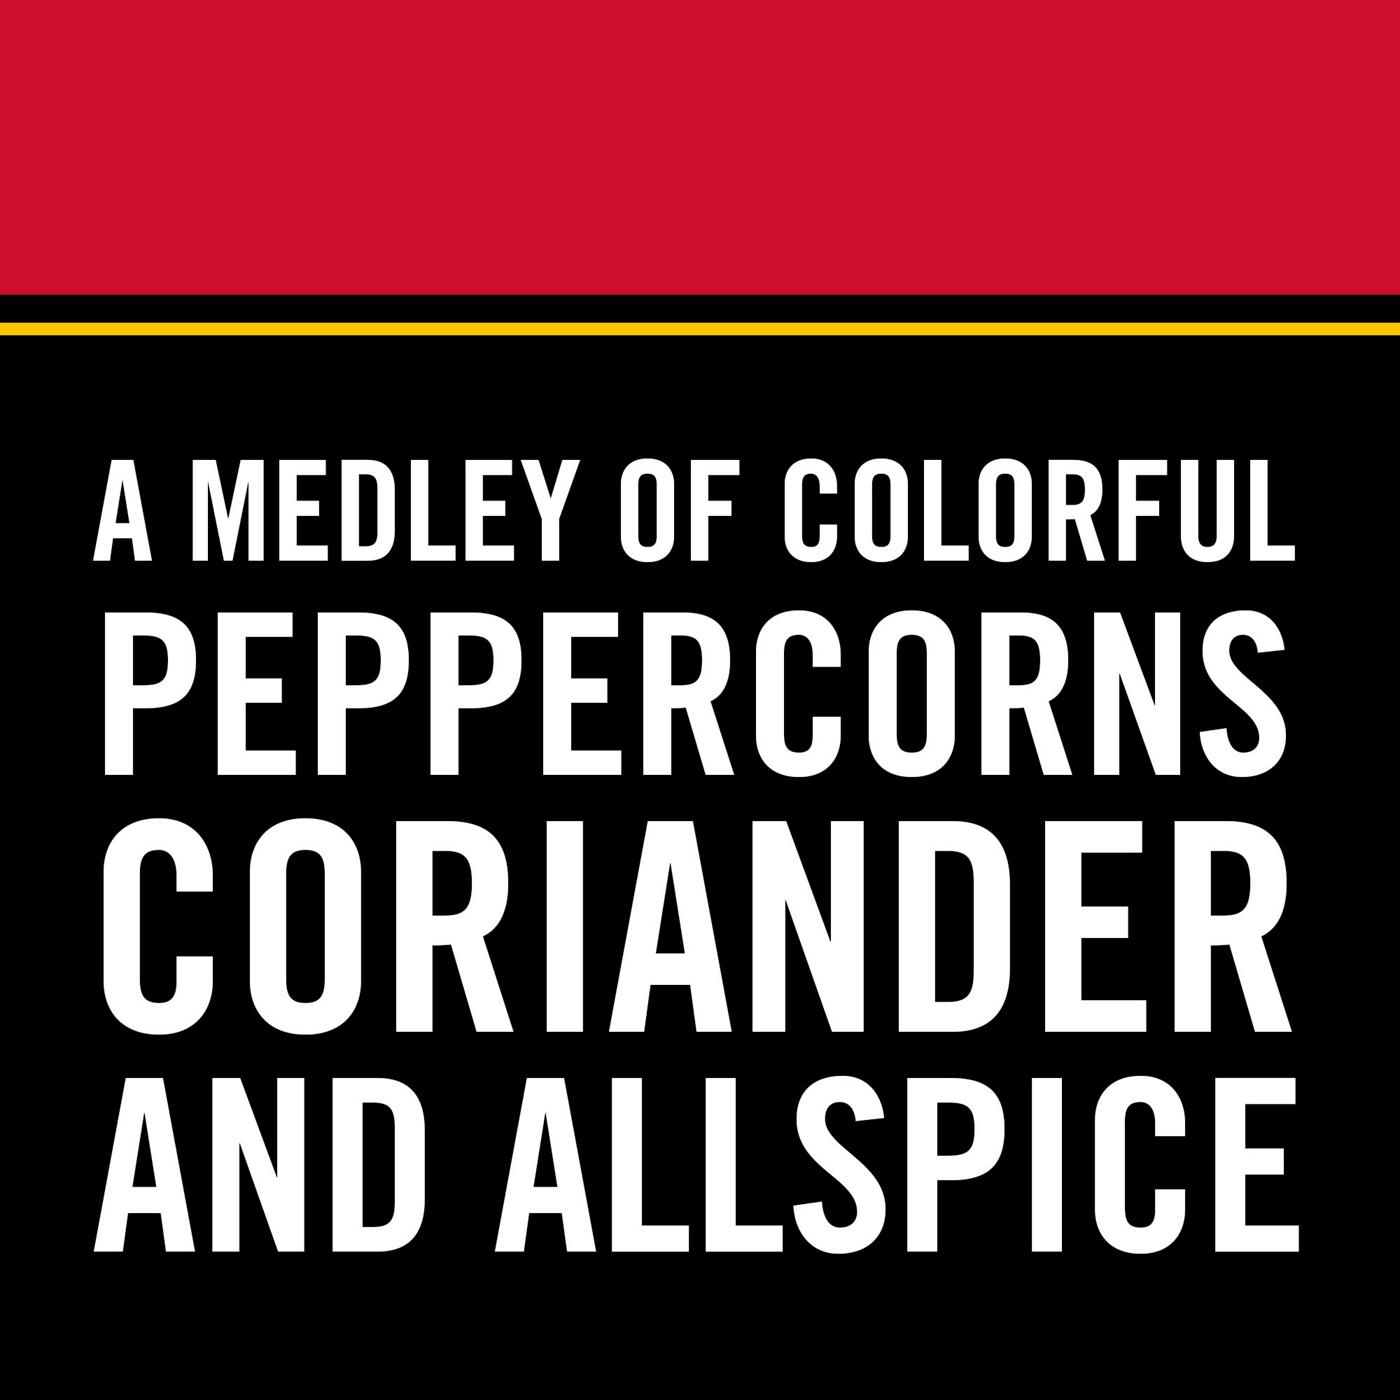 McCormick Black Pepper Grinder - Shop Spice Mixes at H-E-B